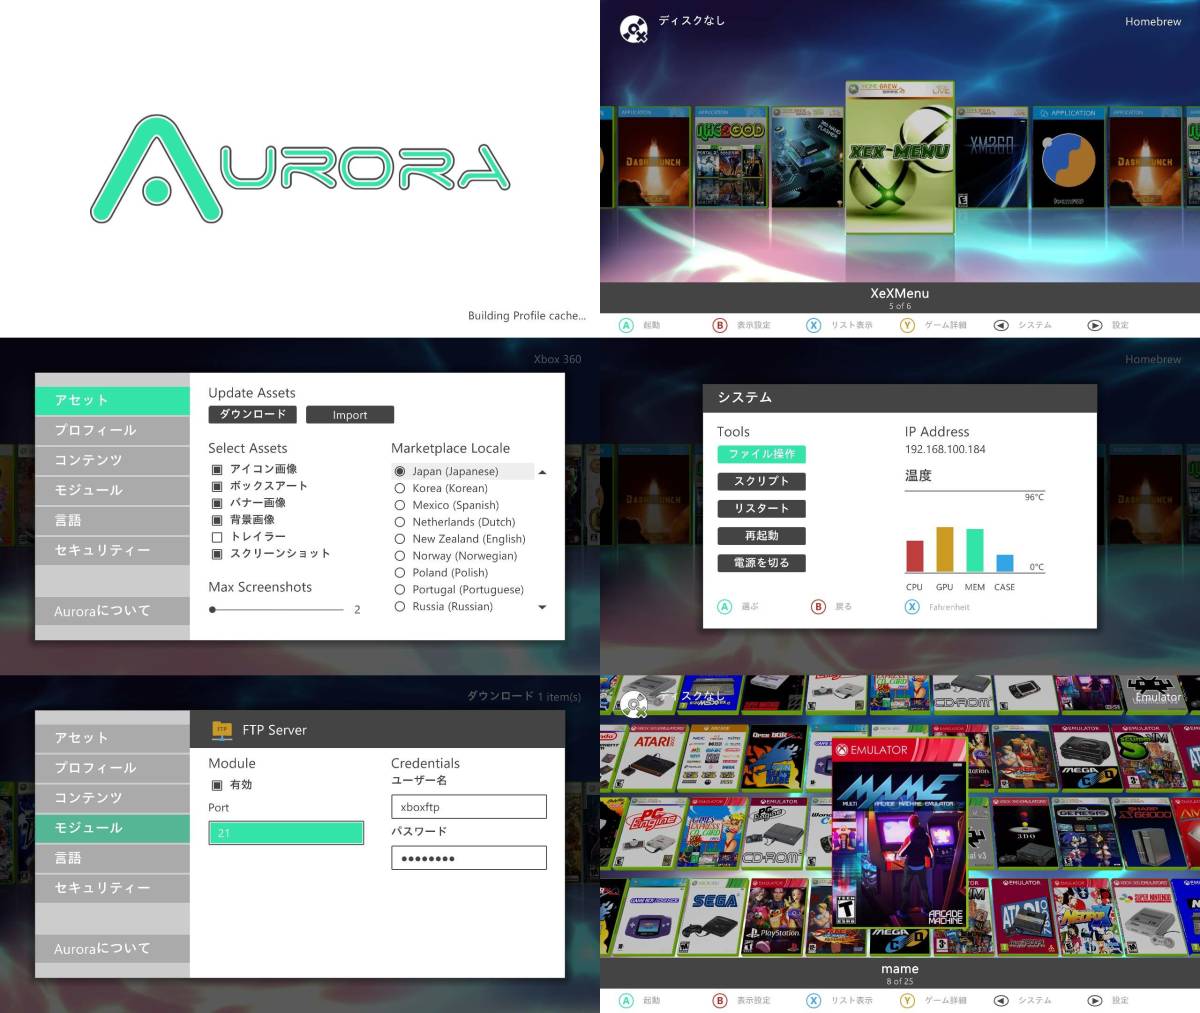 Xbox360 1TB HDD RGH 付属品付 動作OK 日本語化 (Jasper) [N866]_Auroraが起動します